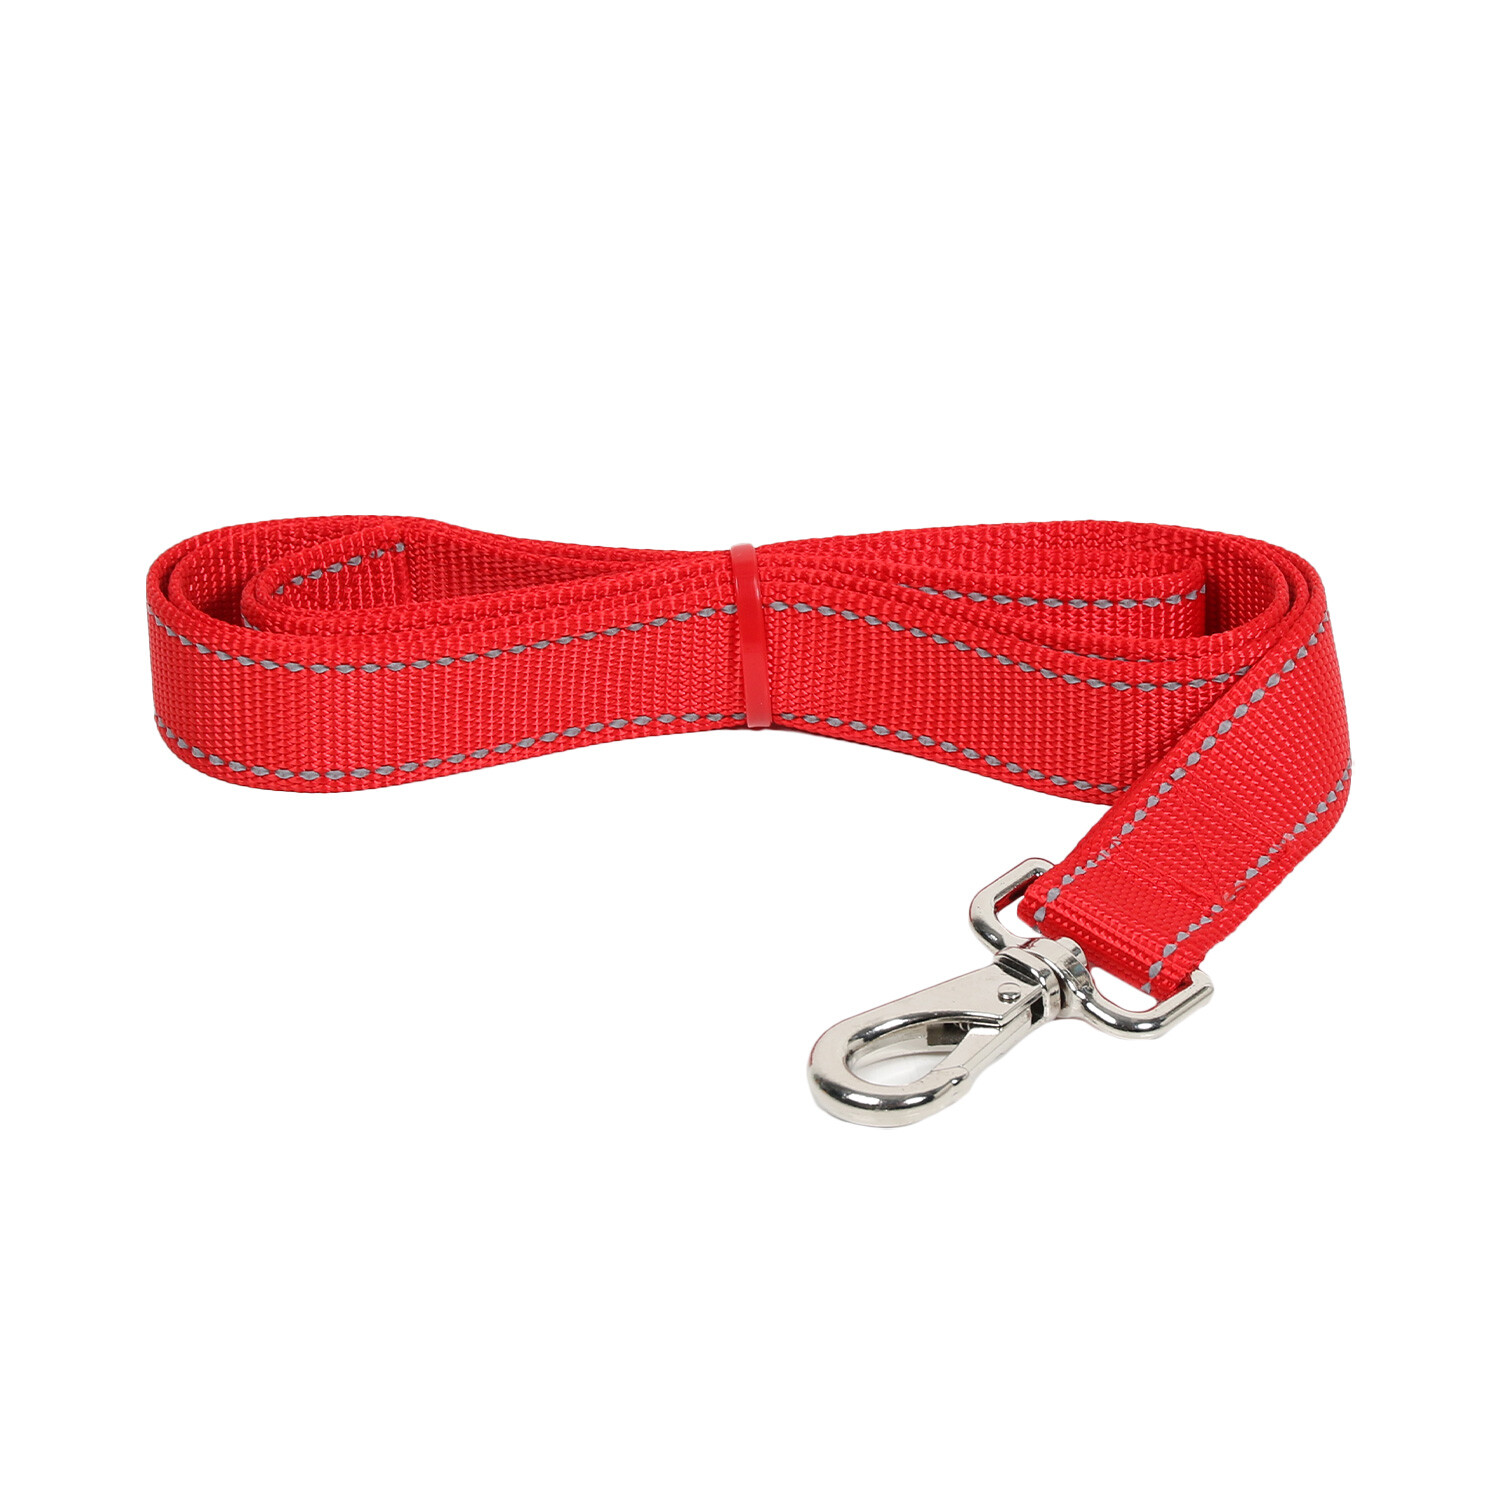 Reflective Nylon Dog Lead - Red / Large Image 1